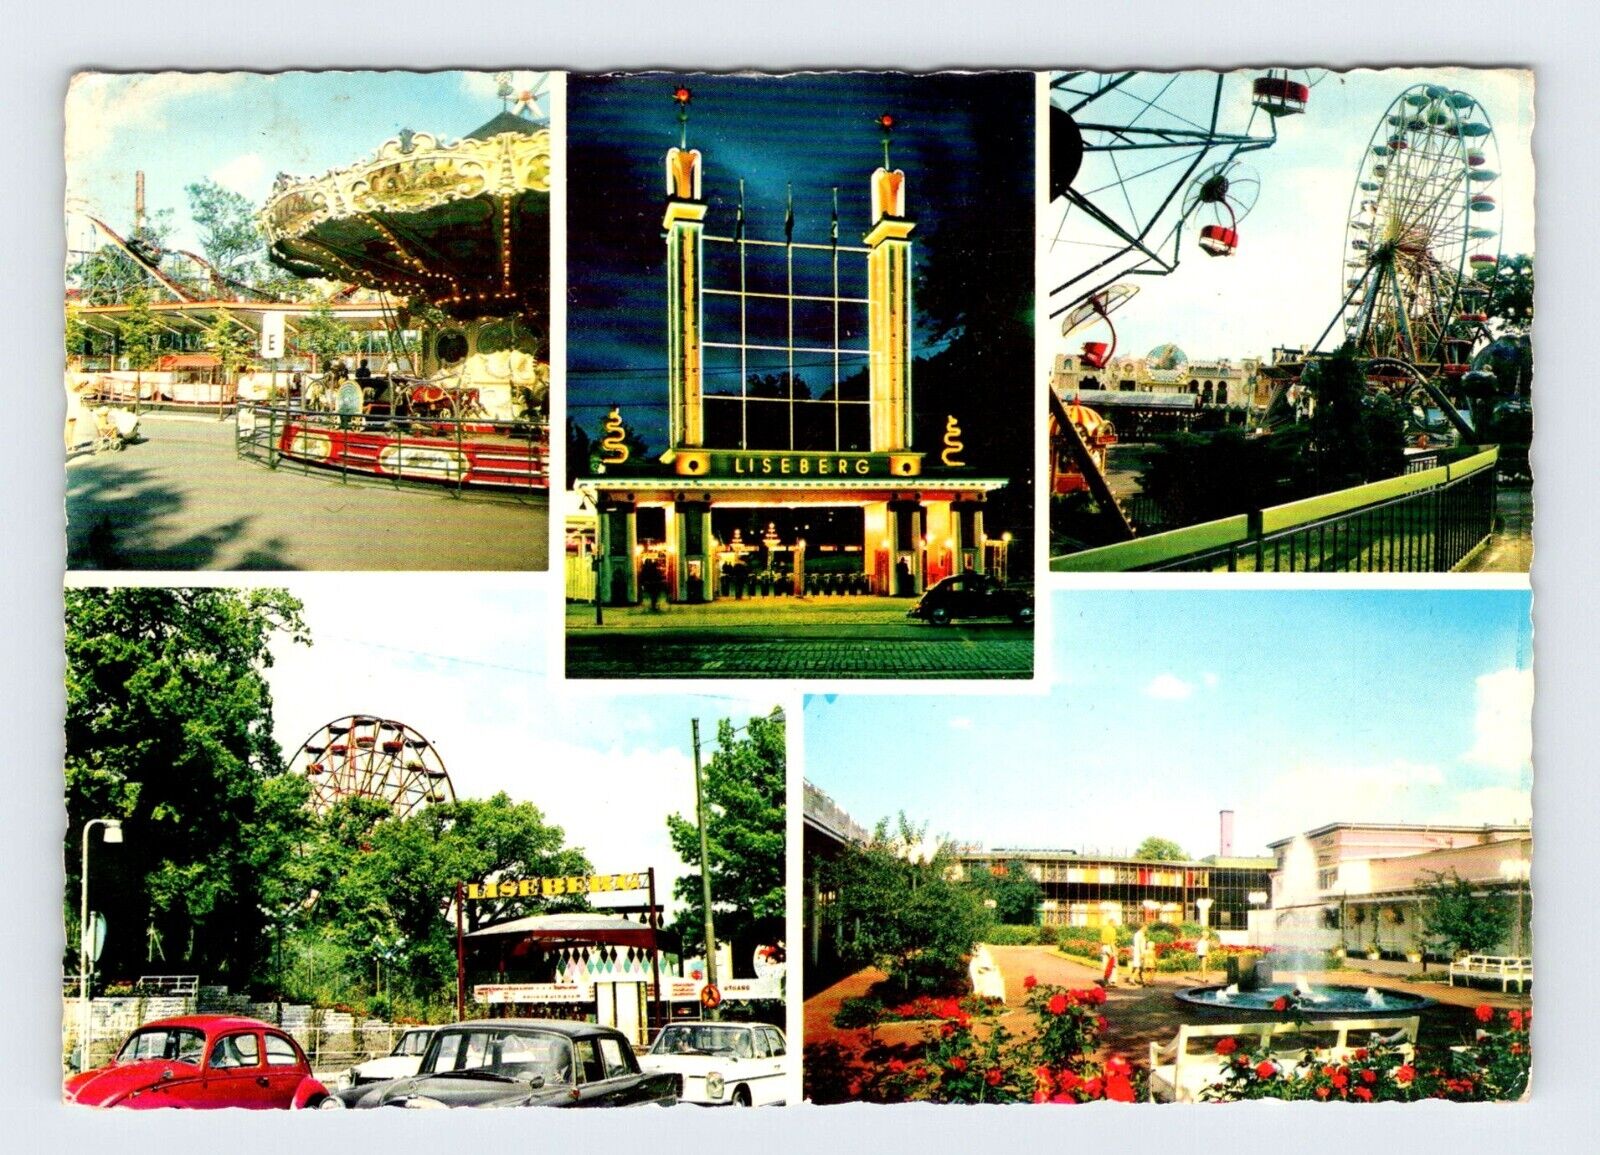 Liseberg Amusement Park Gothenburg Sweden Vintage 4x6 Postcard AF252